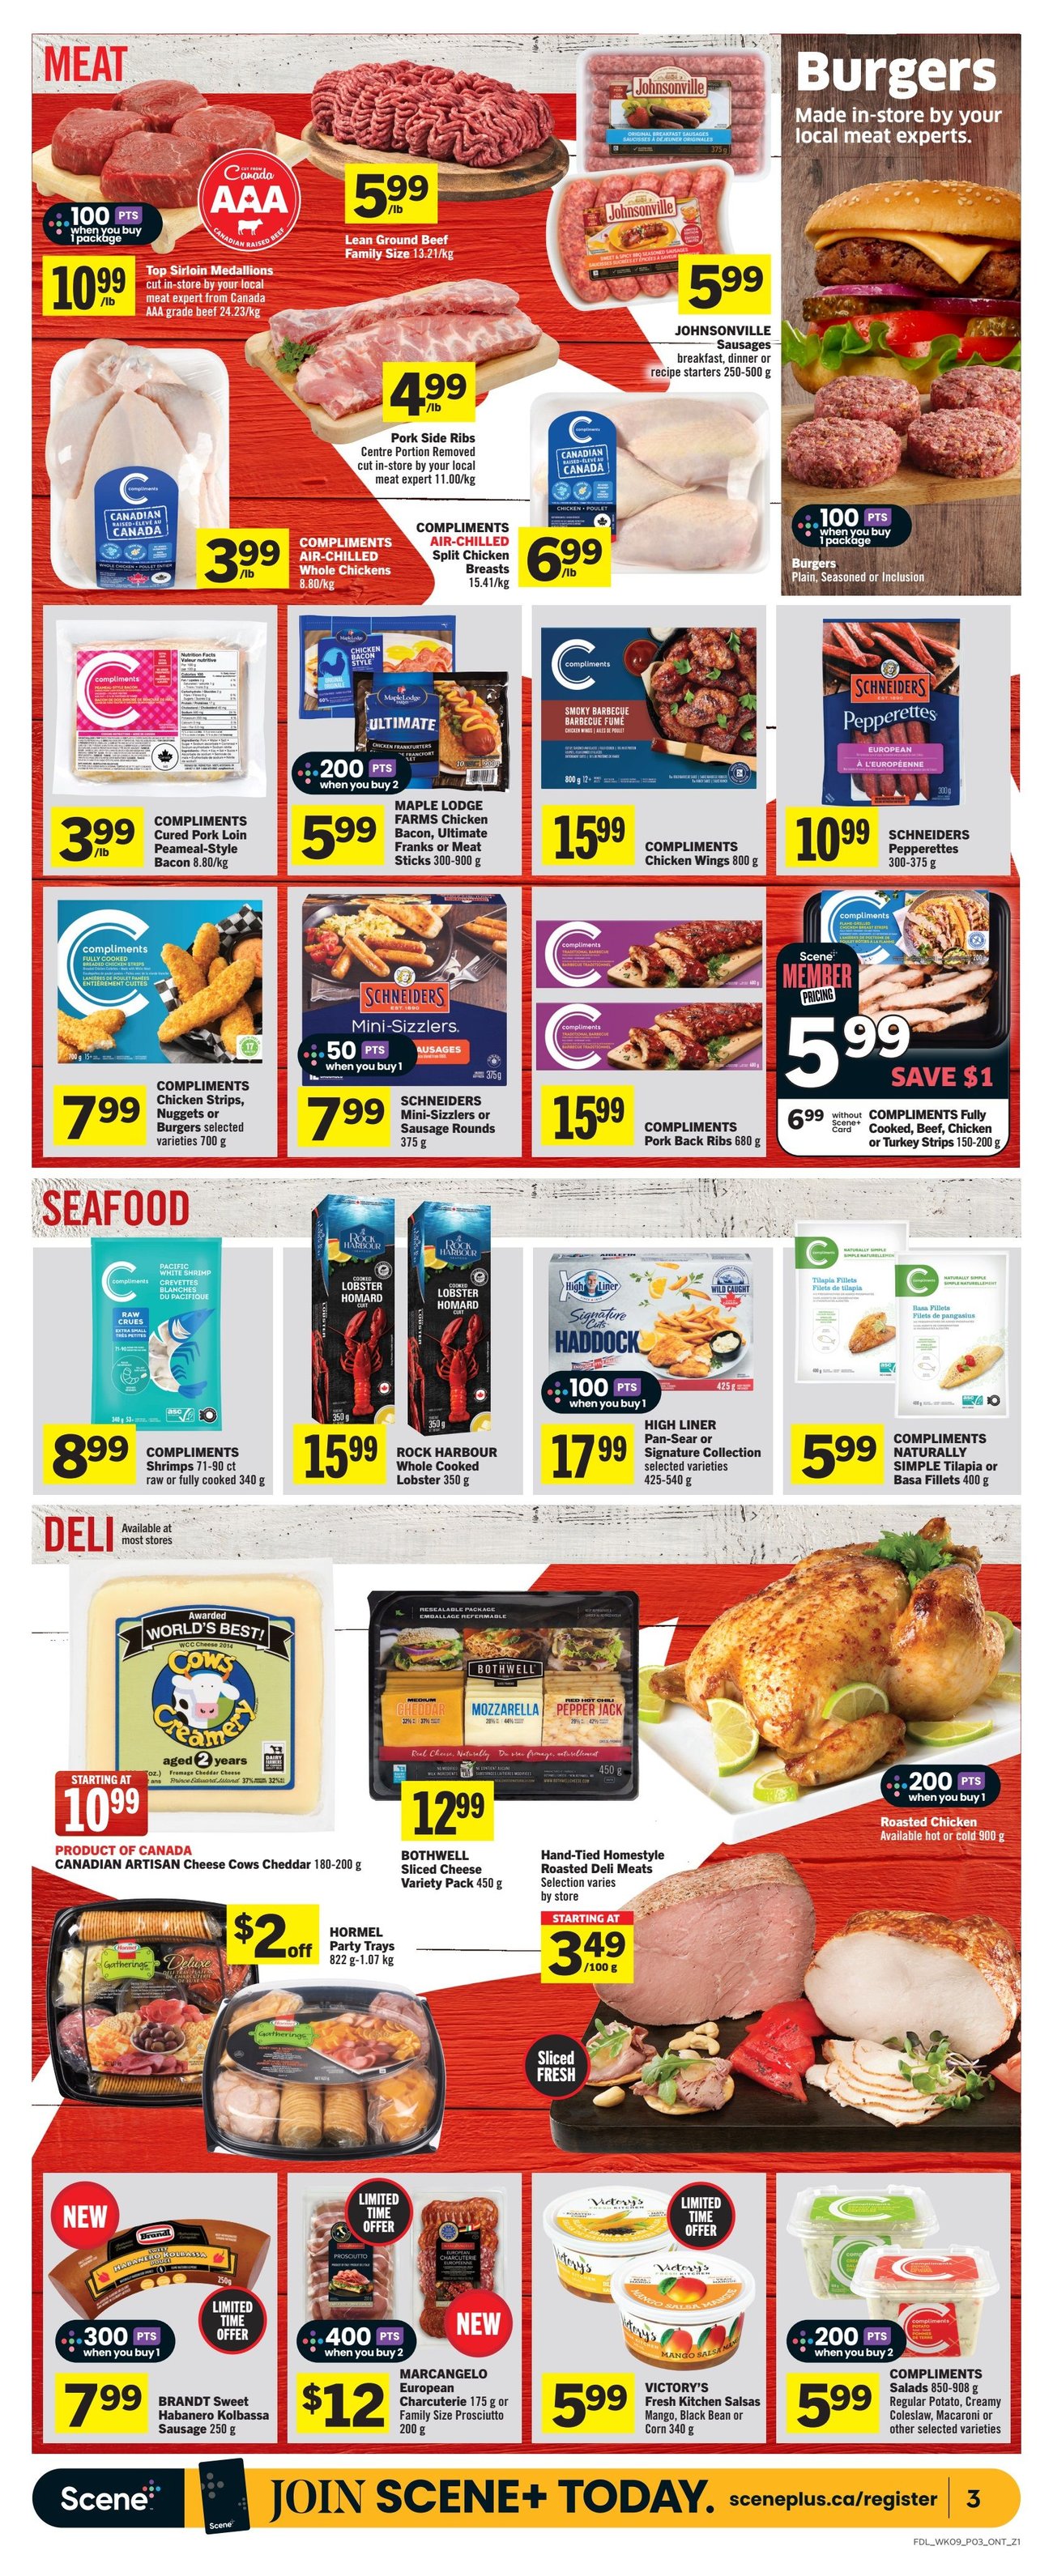 Foodland - Ontario - Weekly Flyer Specials - Page 4